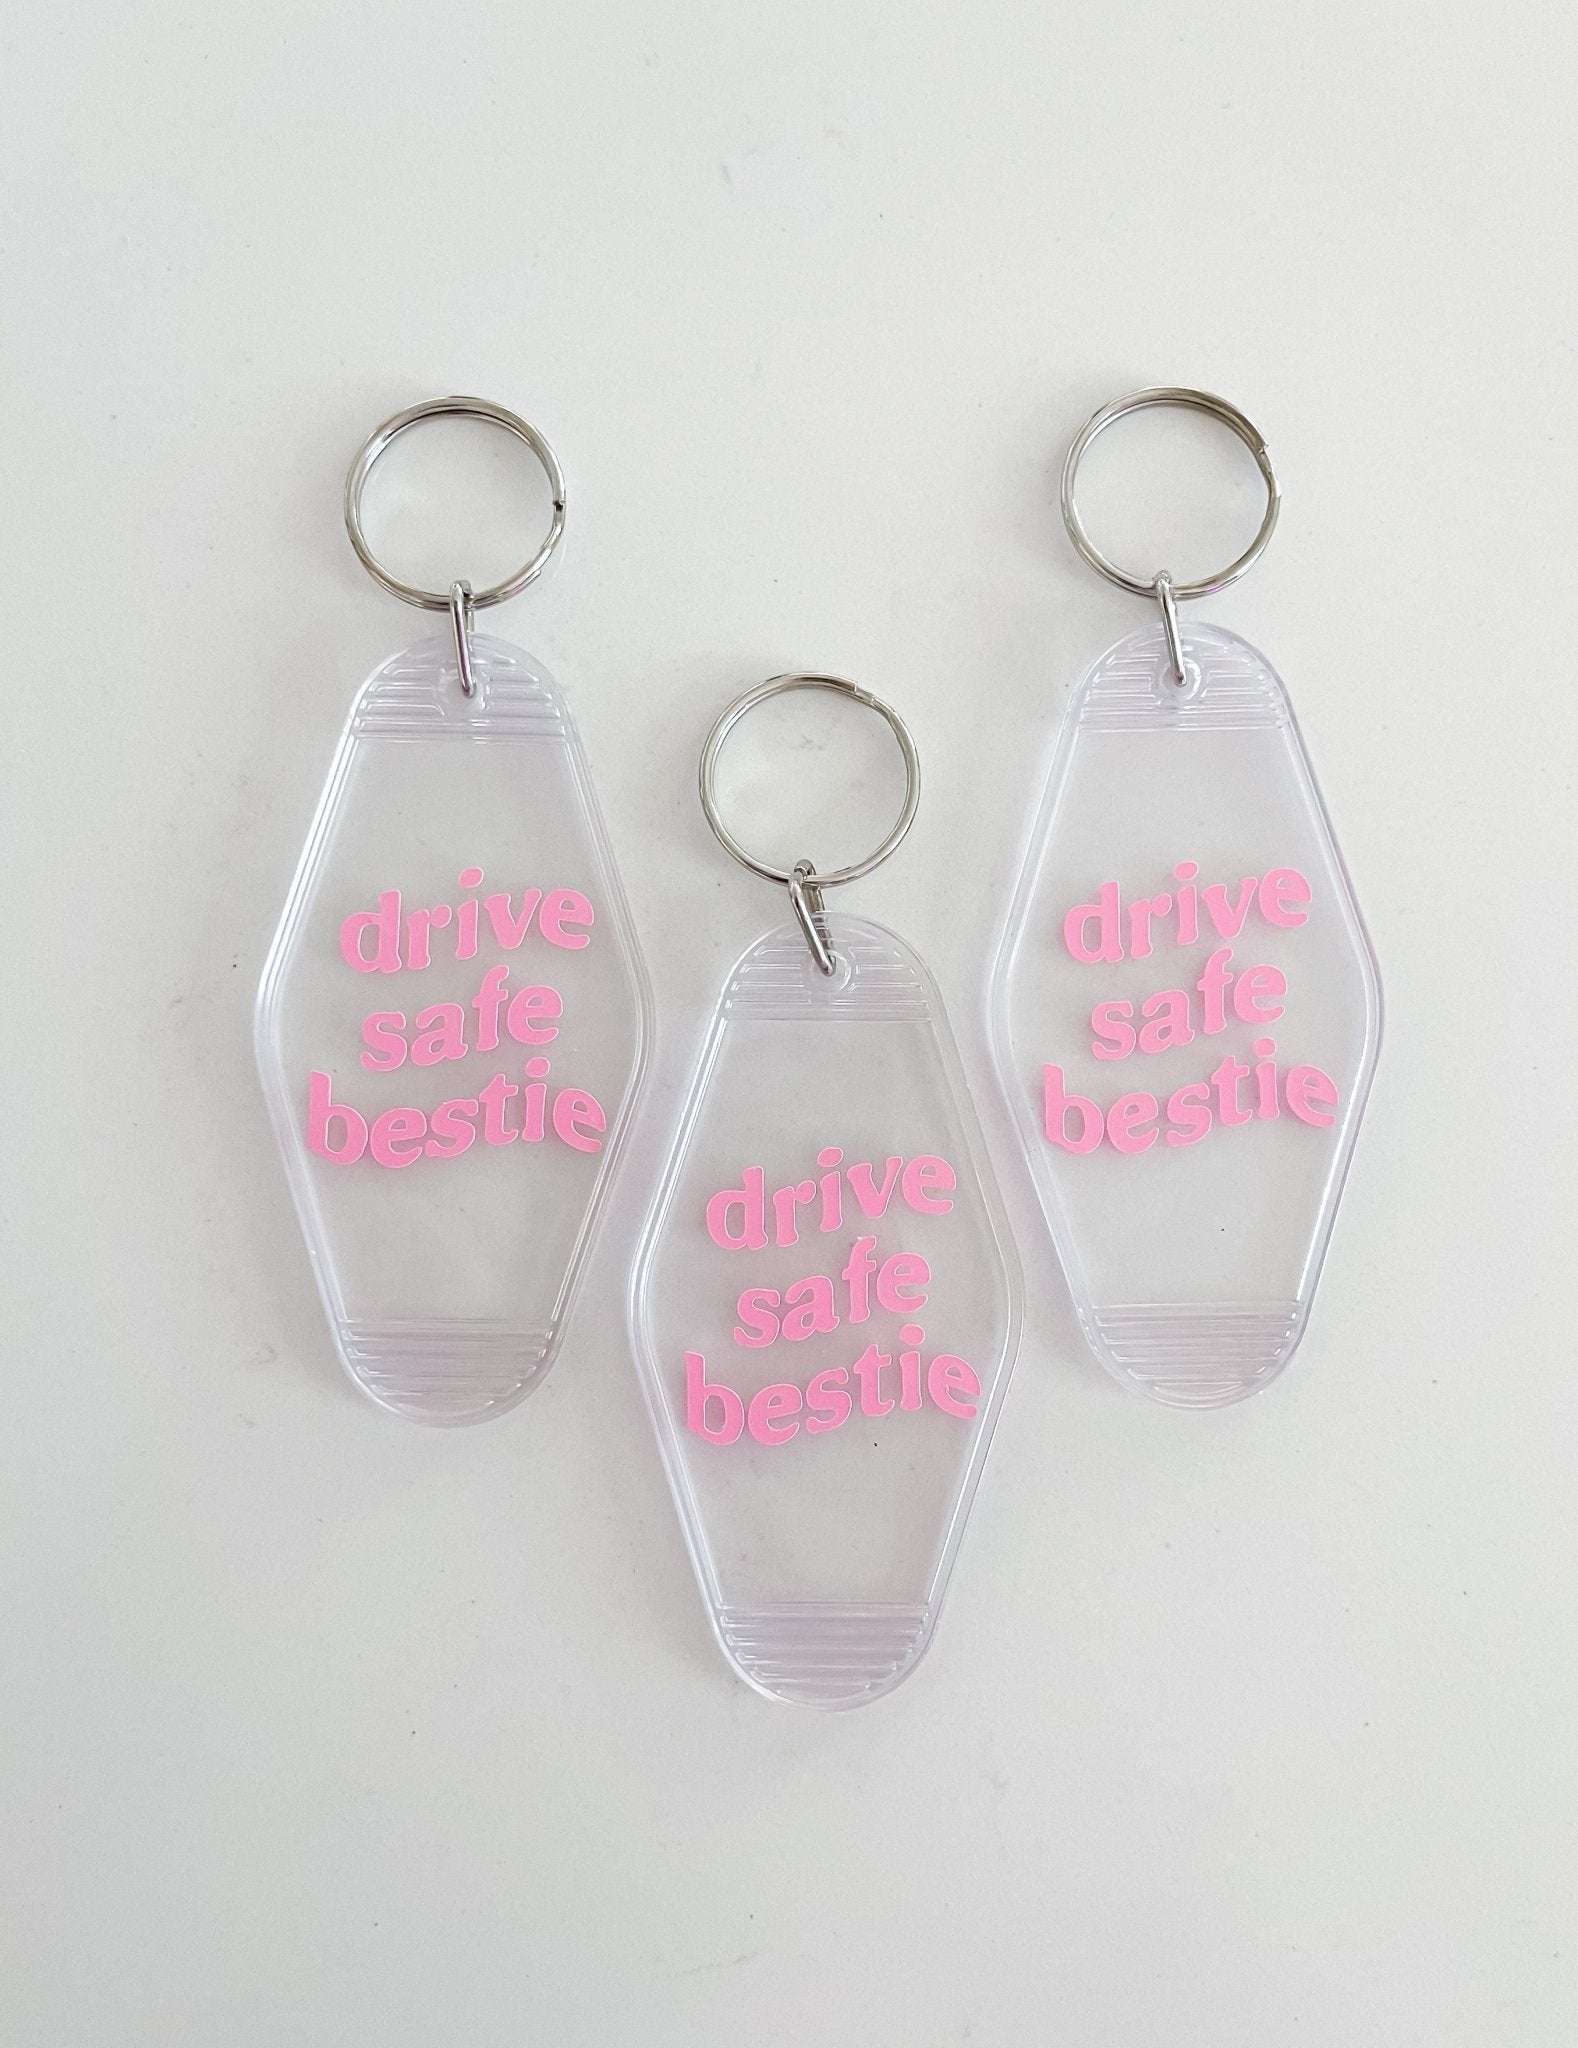 Drive Safe Bestie Keychain Purple - Designs by Lauren Ann